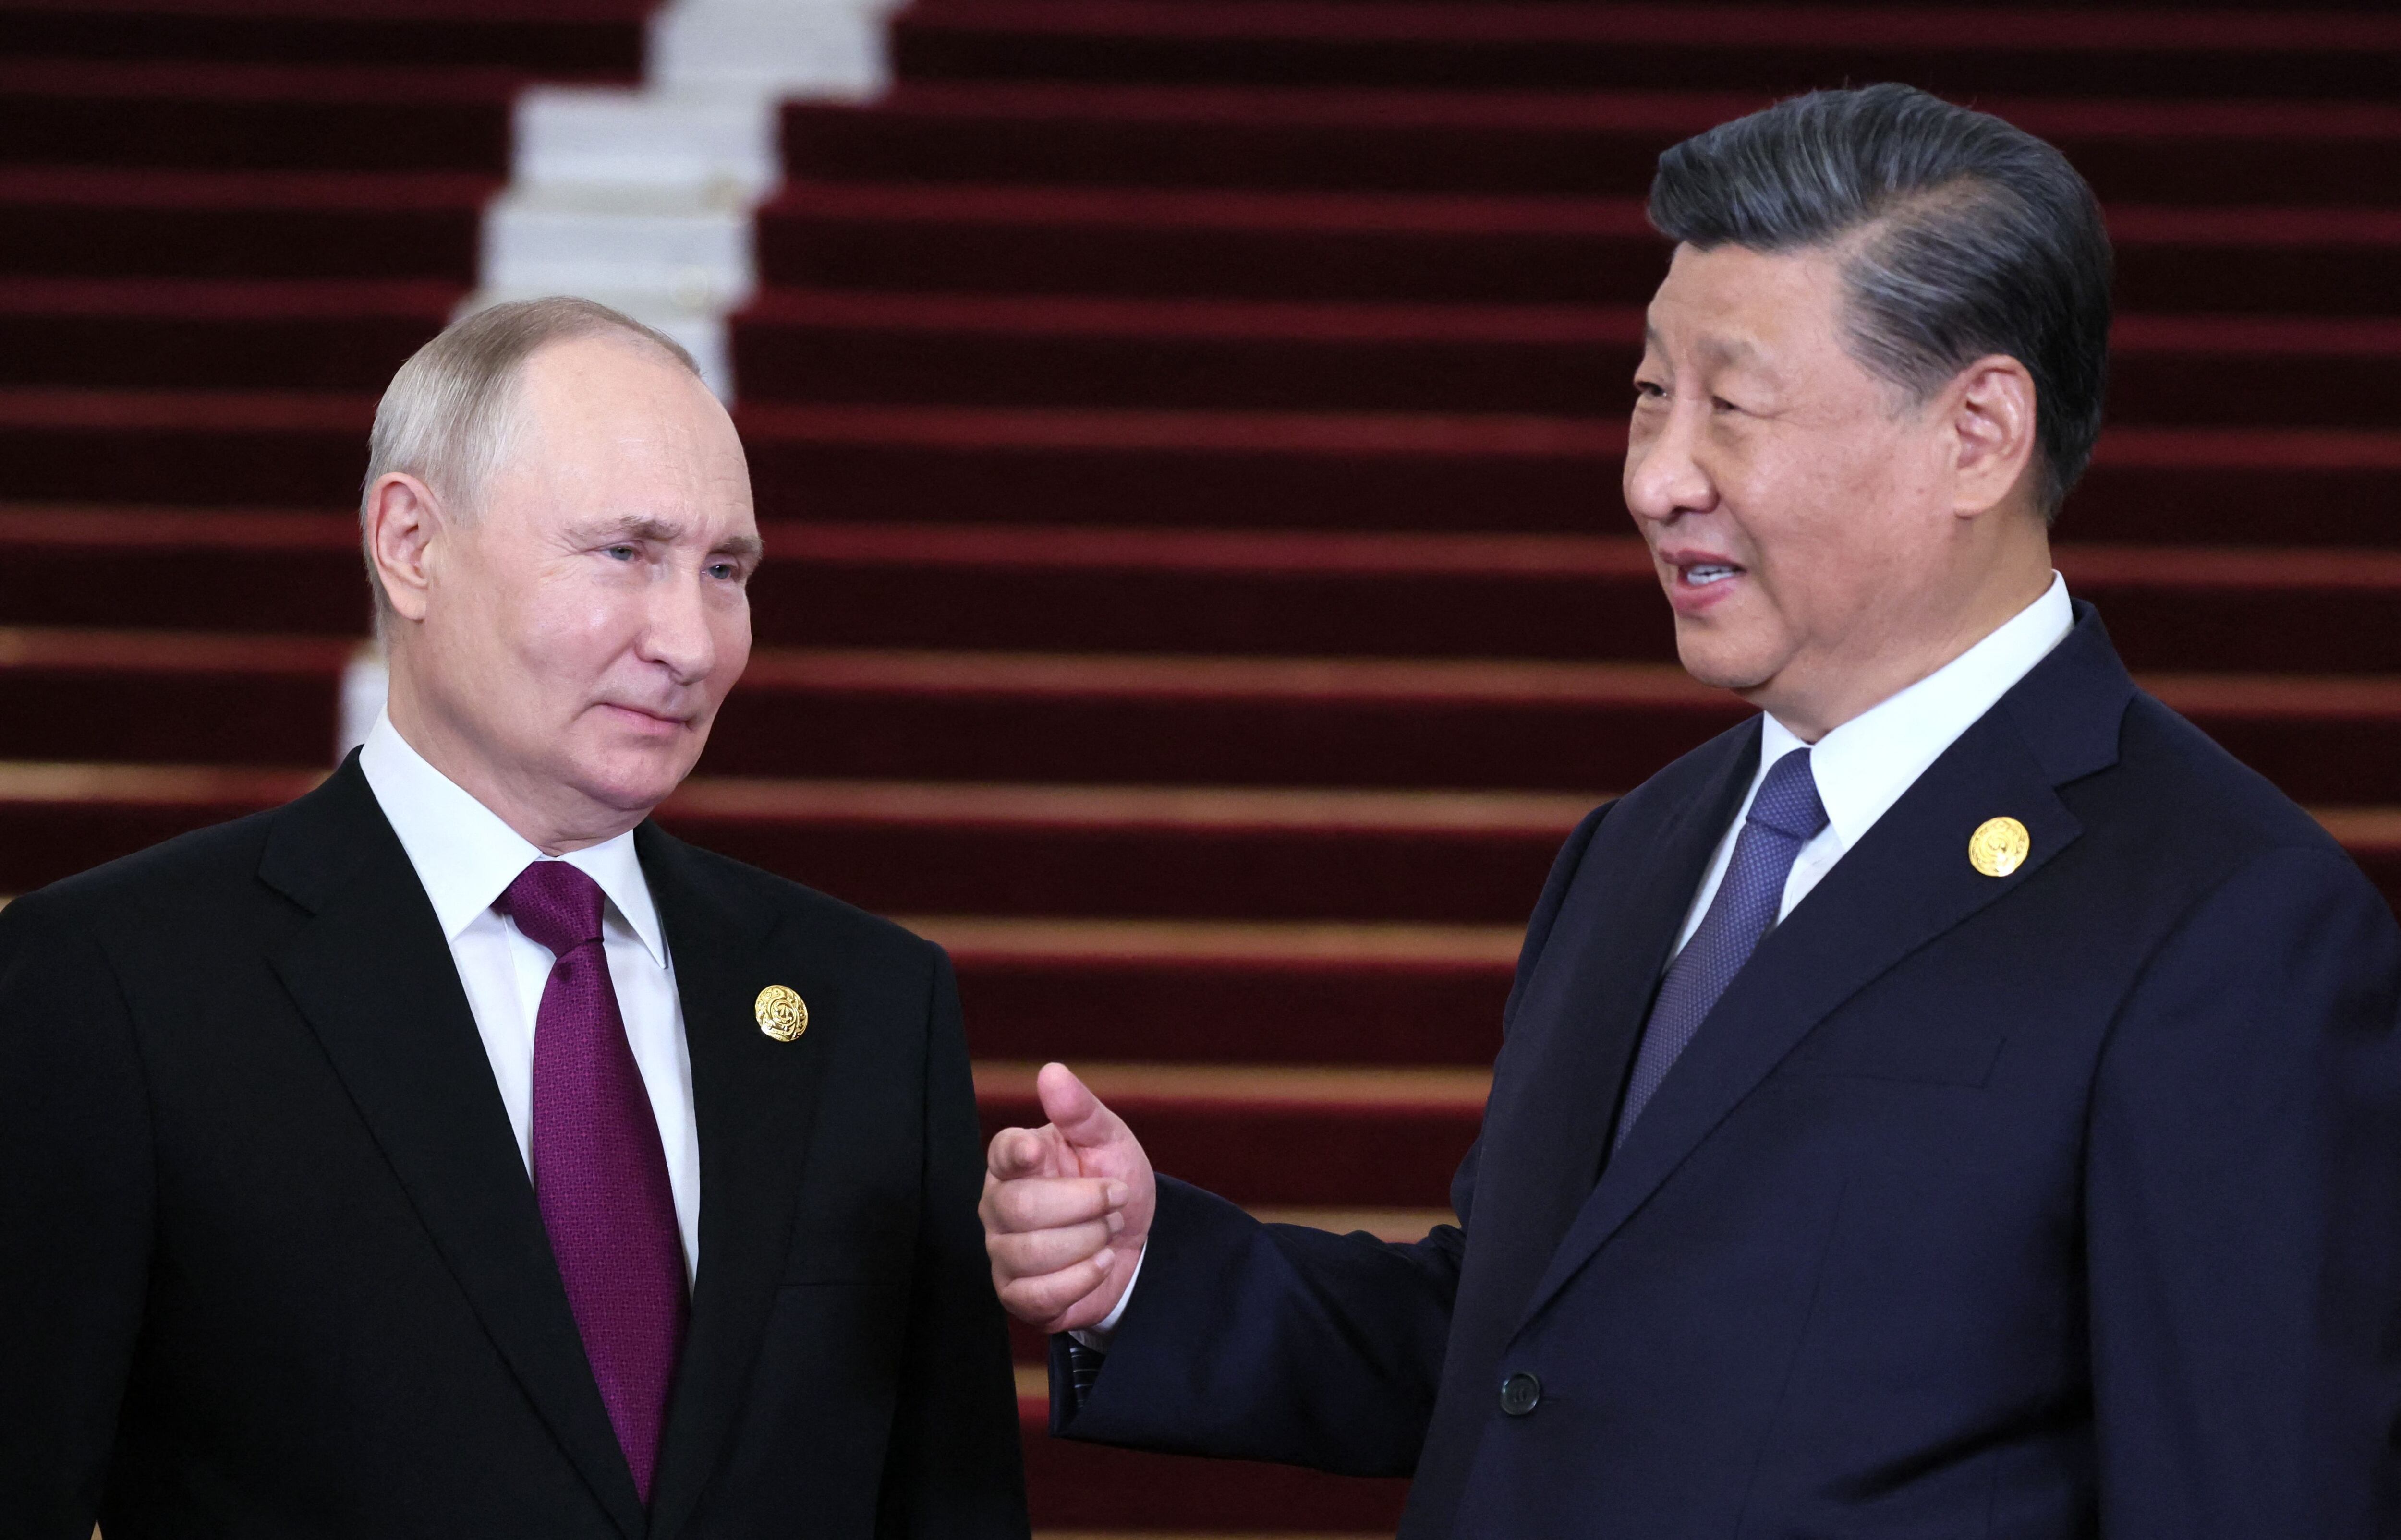 El presidente de la República Popular China Xi Jinping, felicitó mediante la televisión estatal china a su homólogo, Vladimir Putin por su victoria del domingo. Foto: Sergei SAVOSTYANOV/POOL/AFP)